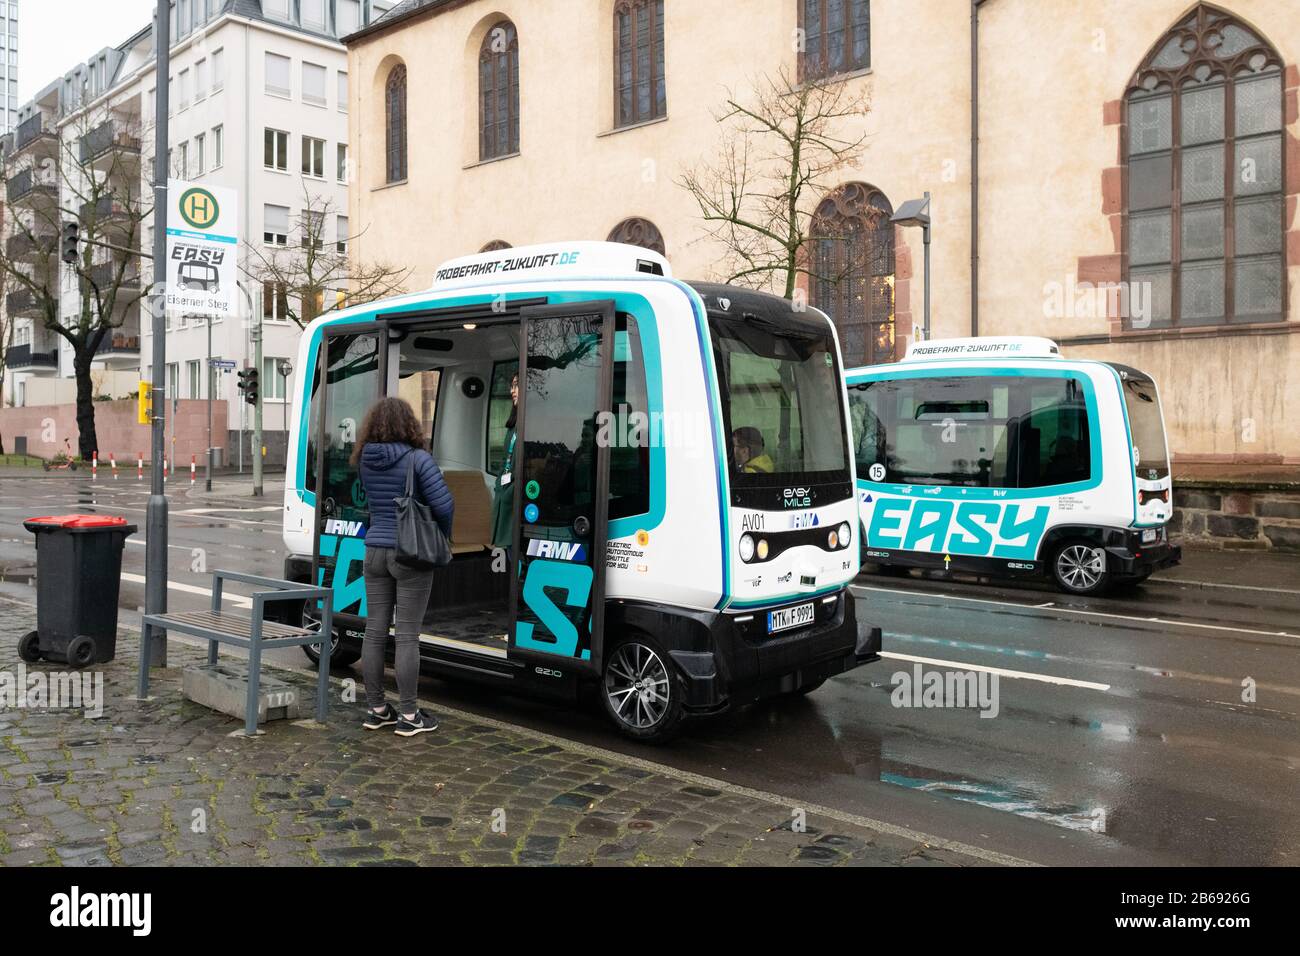 Electric autonomous vehicle testing pilot 2020 - Electric Autonomous Shuttle for You (EAST) by EasyMile, Mainkai, Frankfurt, Germany Stock Photo